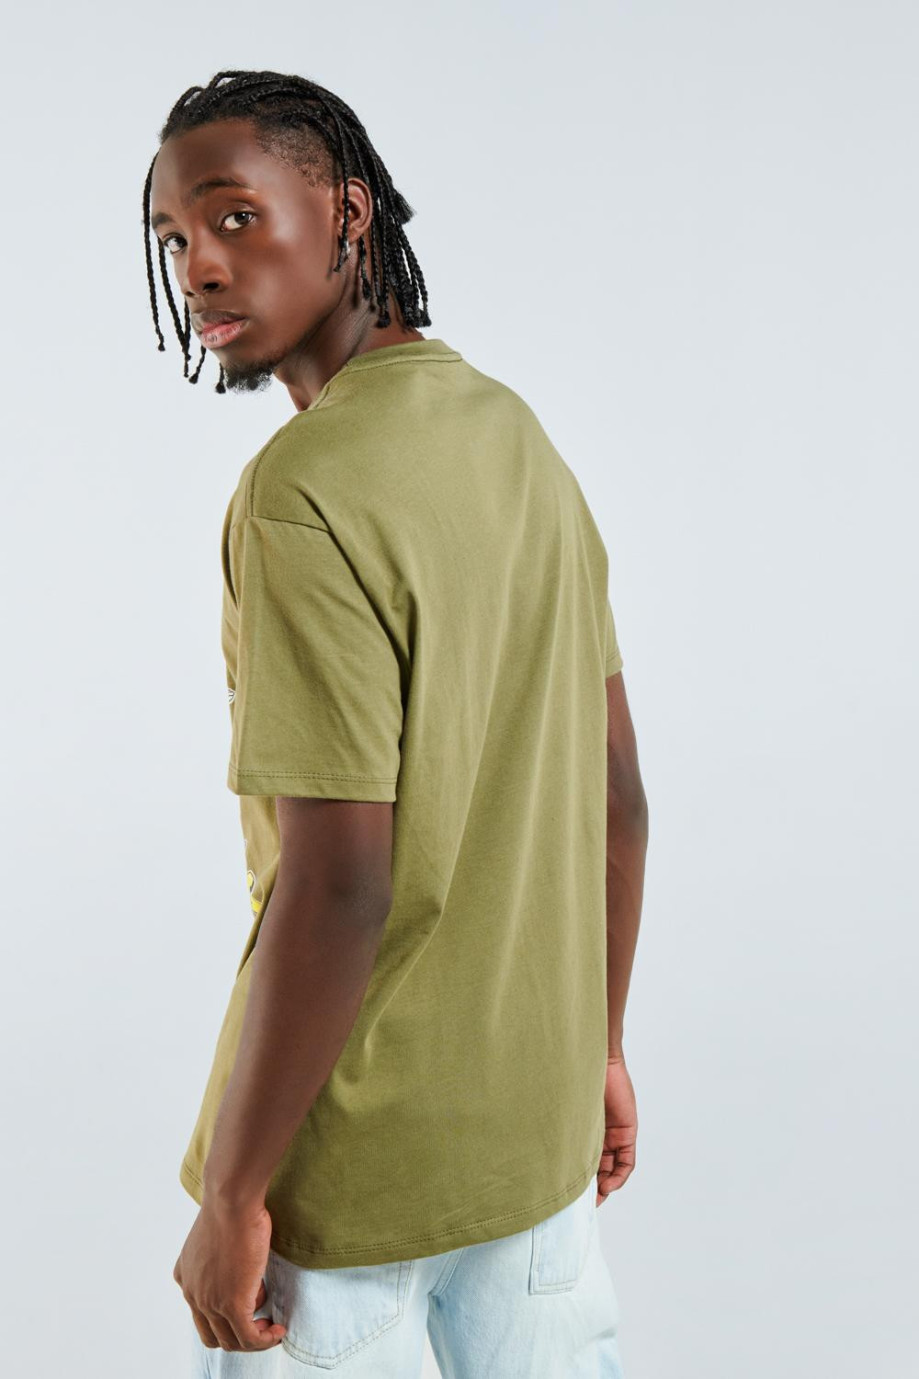 Camiseta verde oscura con diseño de Los Picapiedra y manga corta